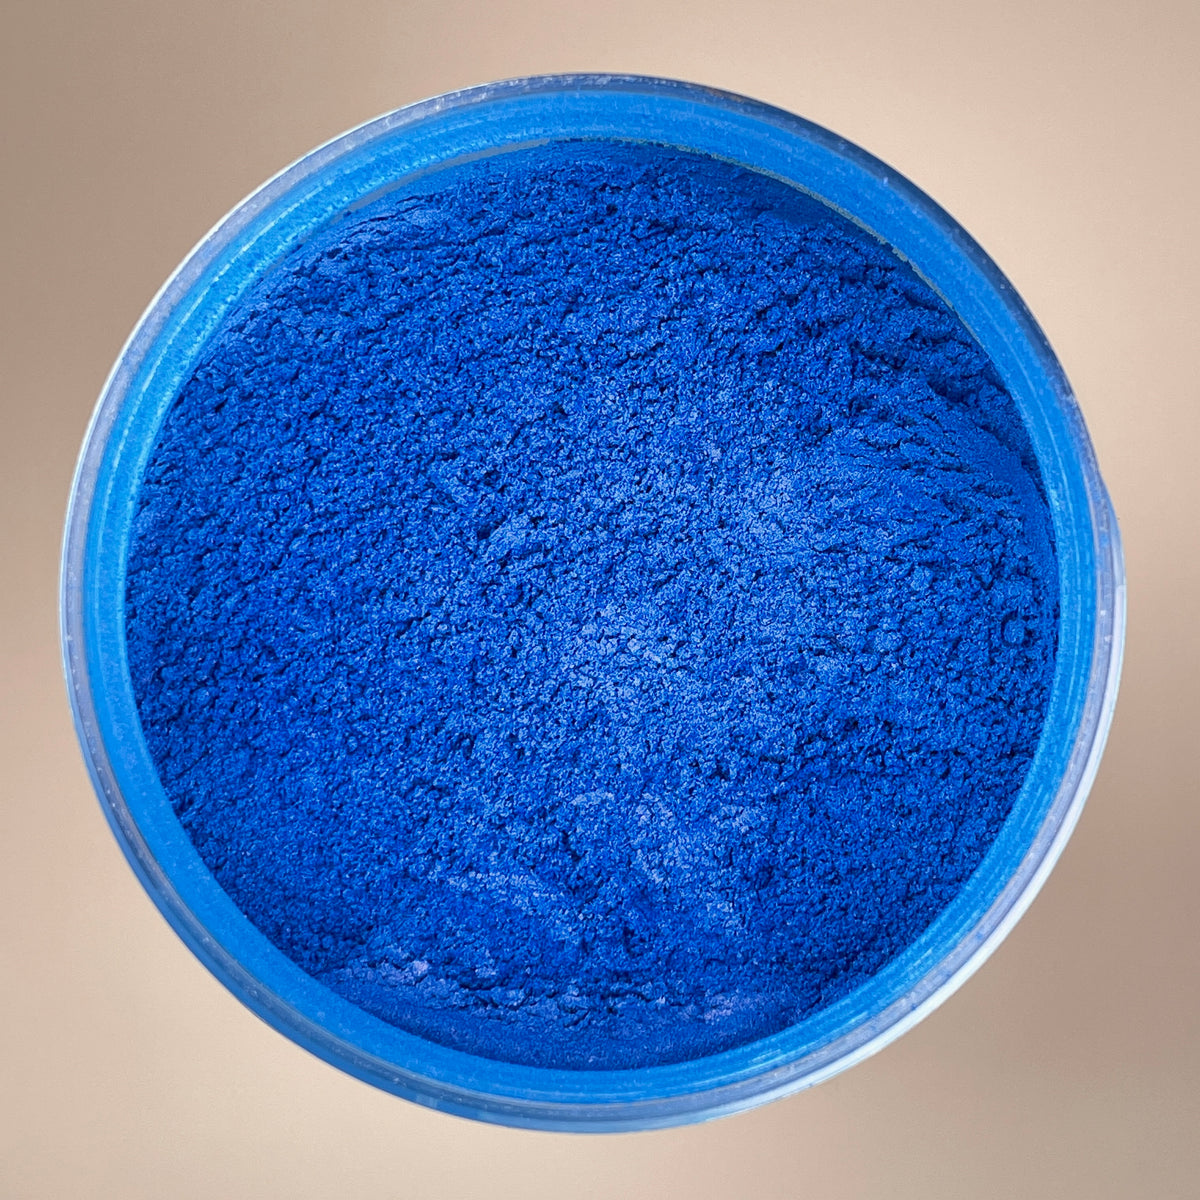 Dark Ocean Blue (Mica Powder for Epoxy Resin) - Superclear Epoxy